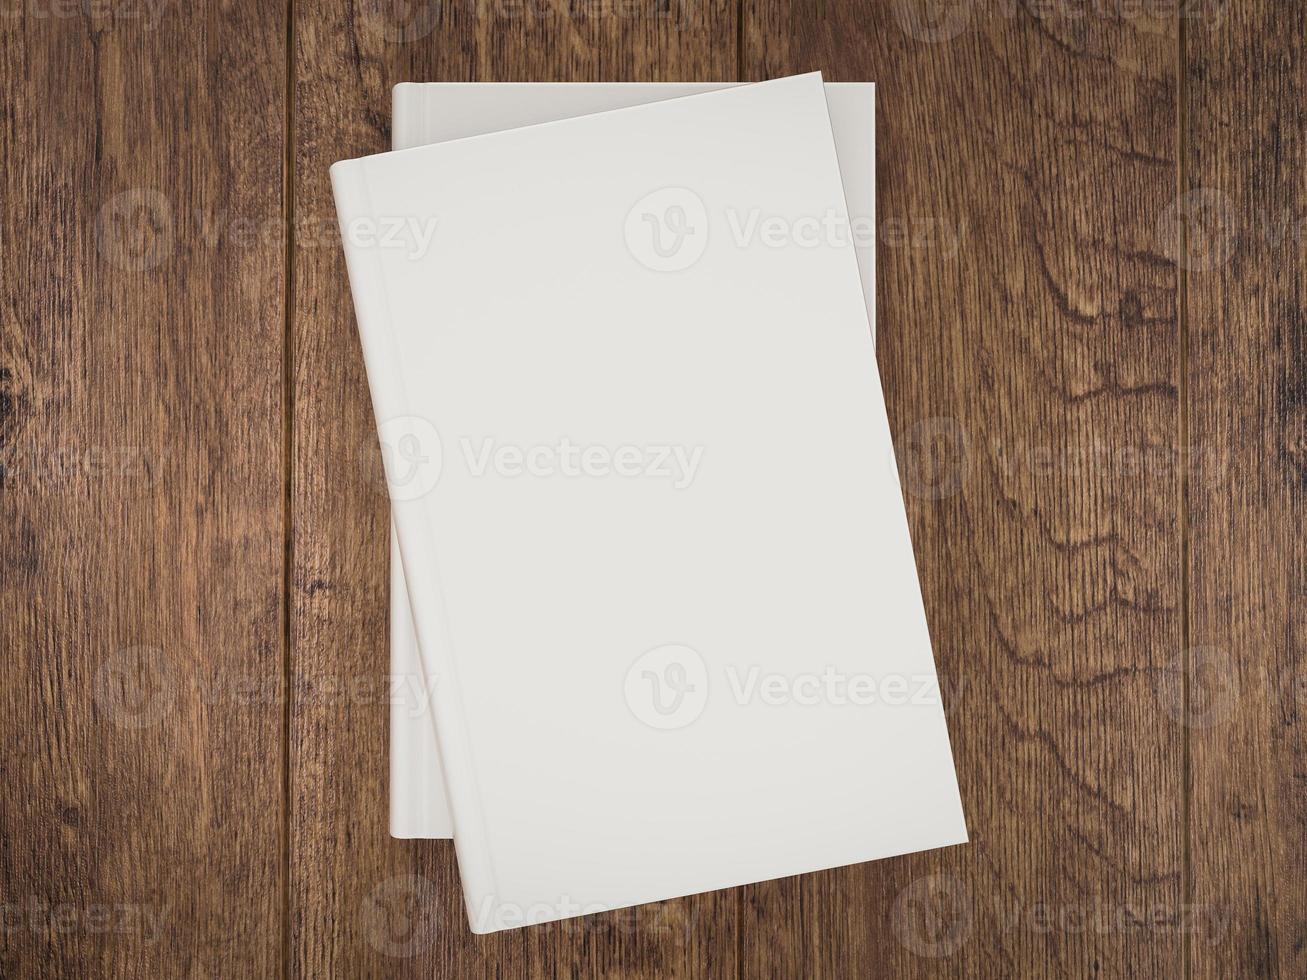 plantilla de maqueta de libro blanco vacío sobre fondo de madera foto